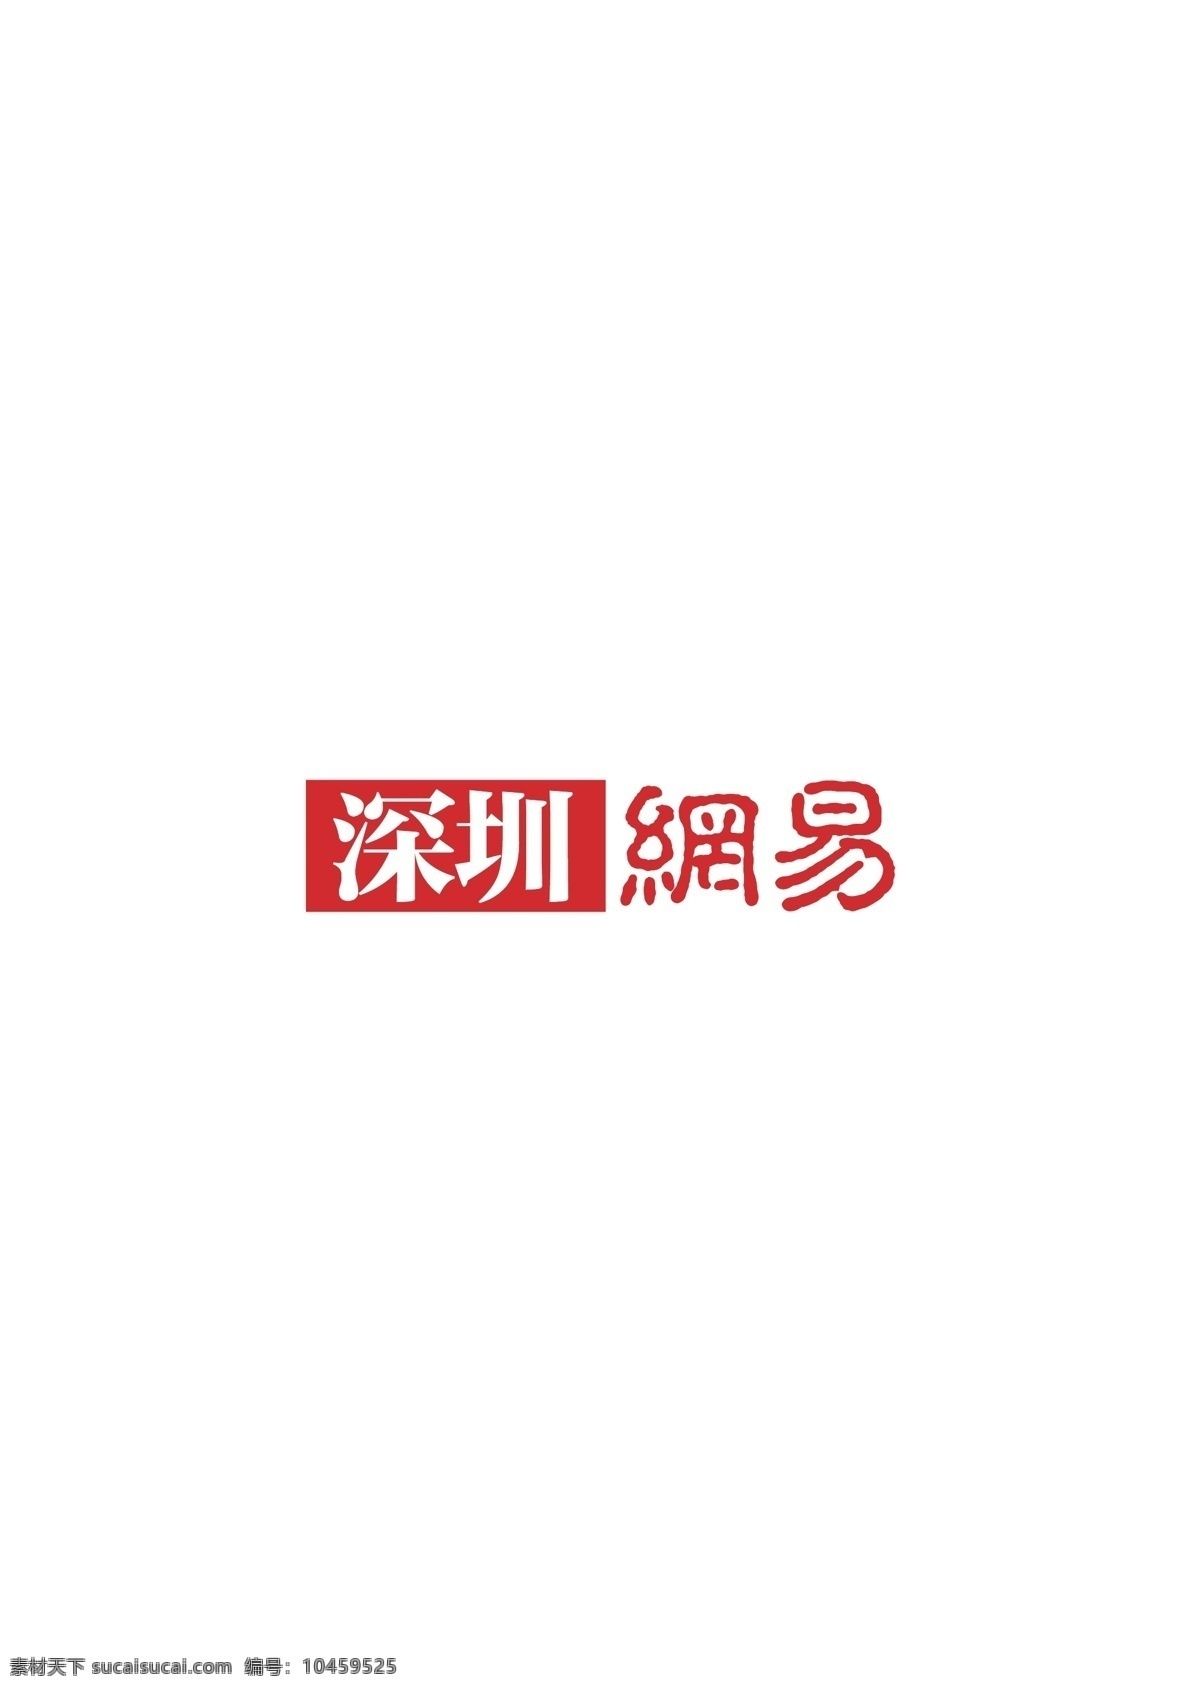 深圳网易 logo 矢量 深圳 网易 标志图标 企业 标志